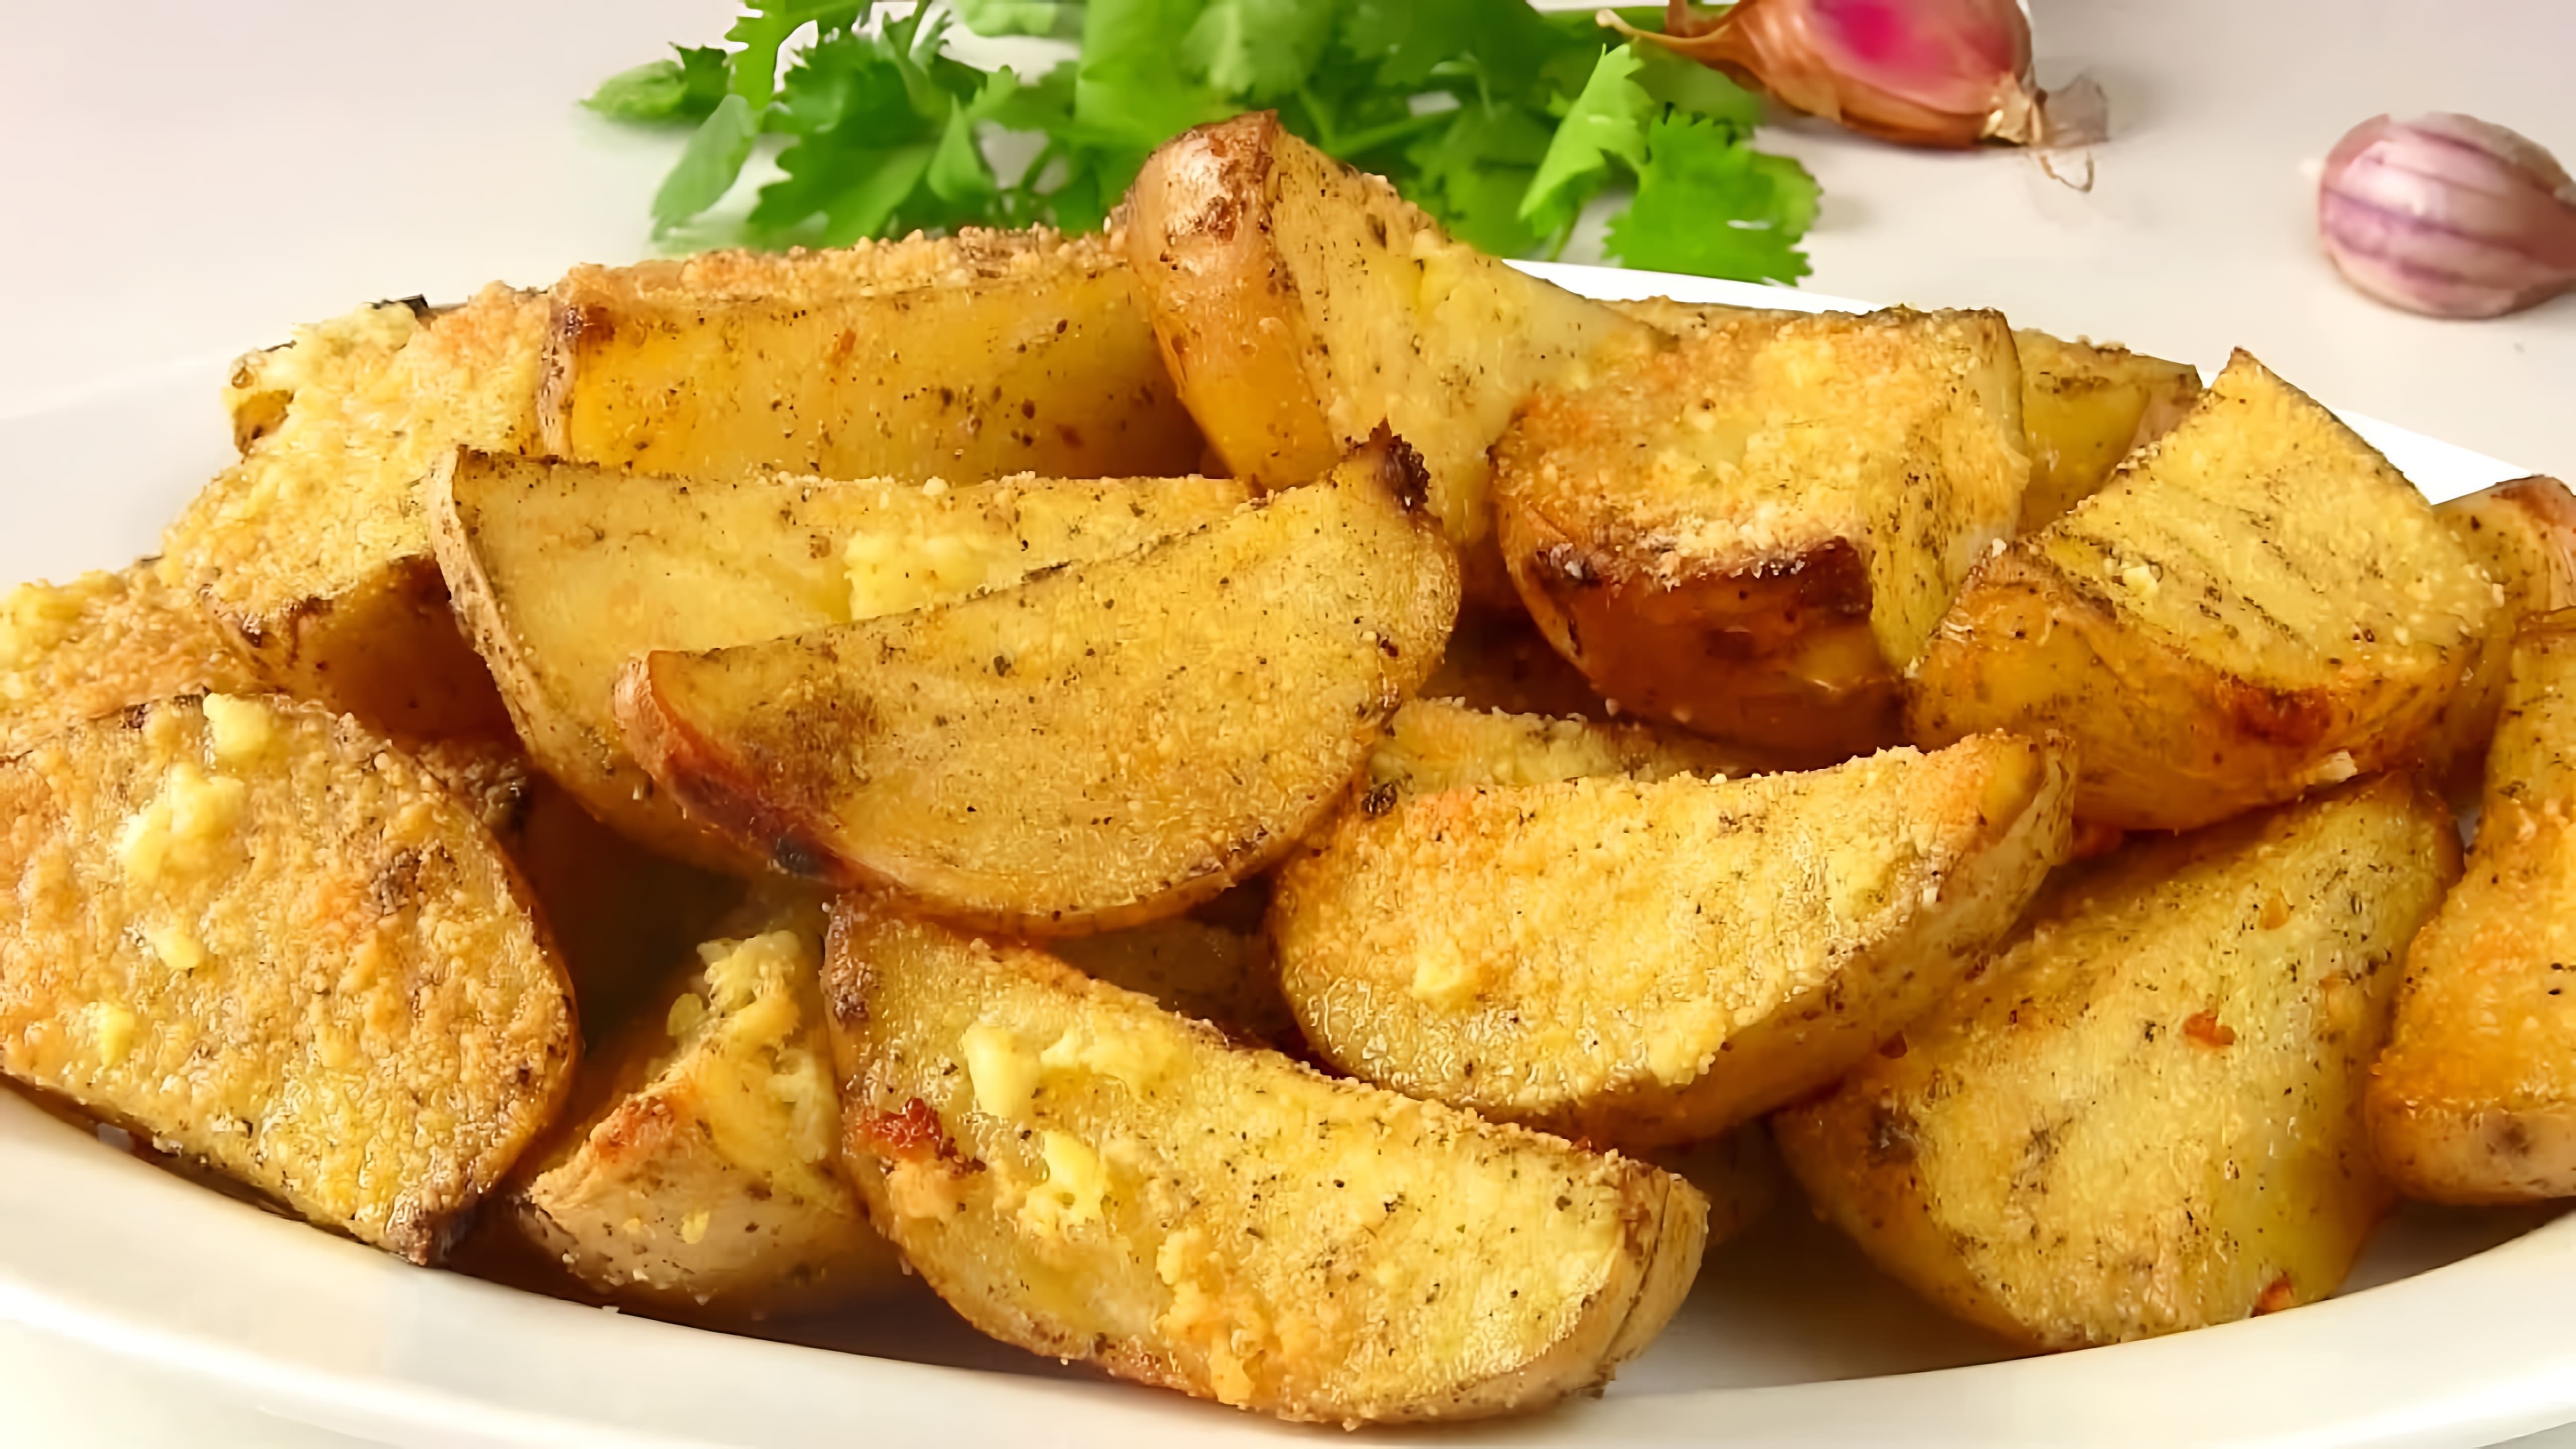 В этом видео демонстрируется простой и быстрый рецепт приготовления картофеля дольками в духовке